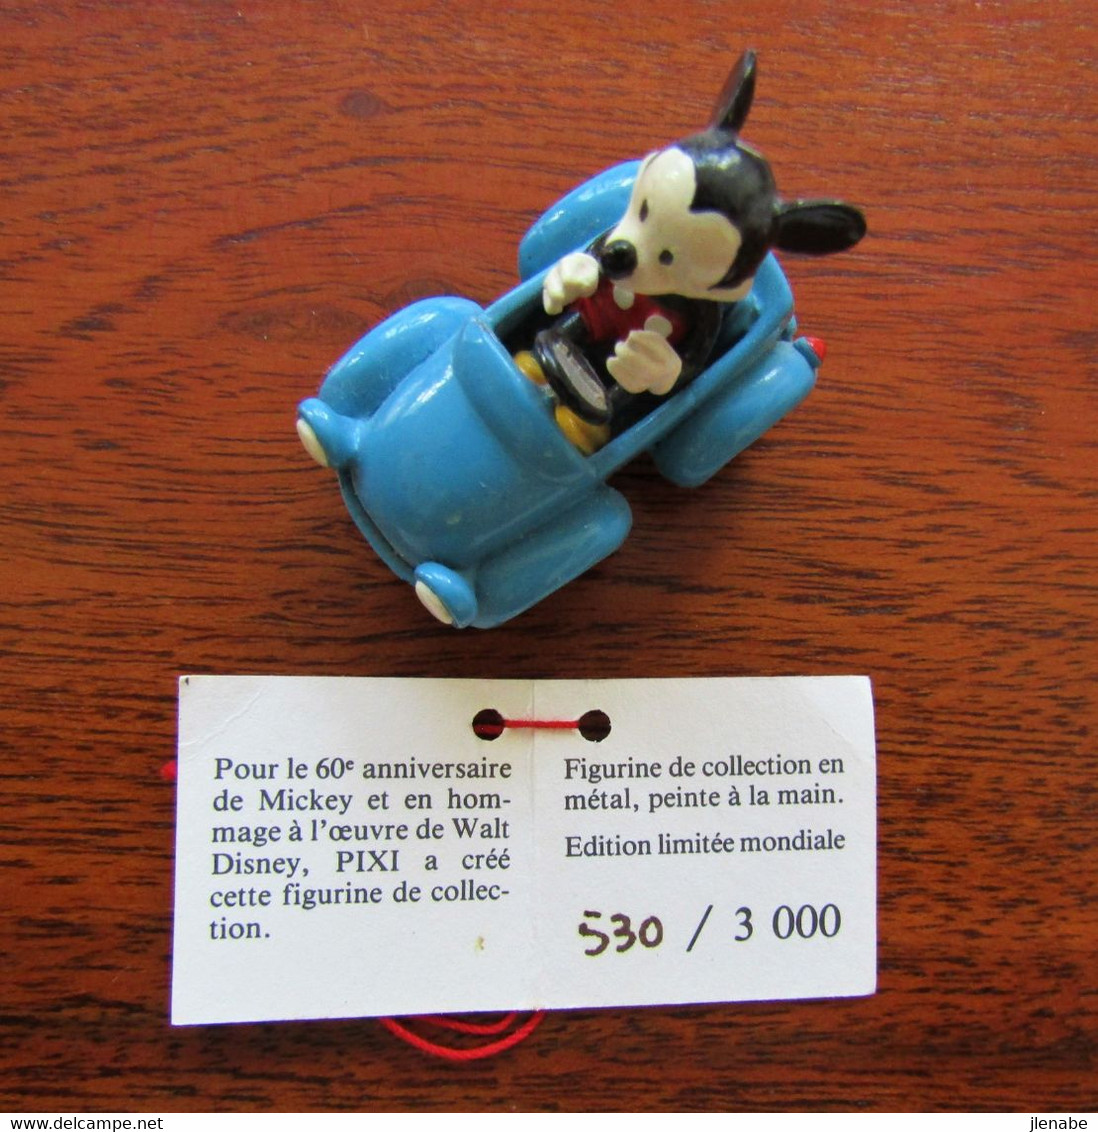 Statues - Metal - Pixi Mickey Mouse en voiture de Walt Disney